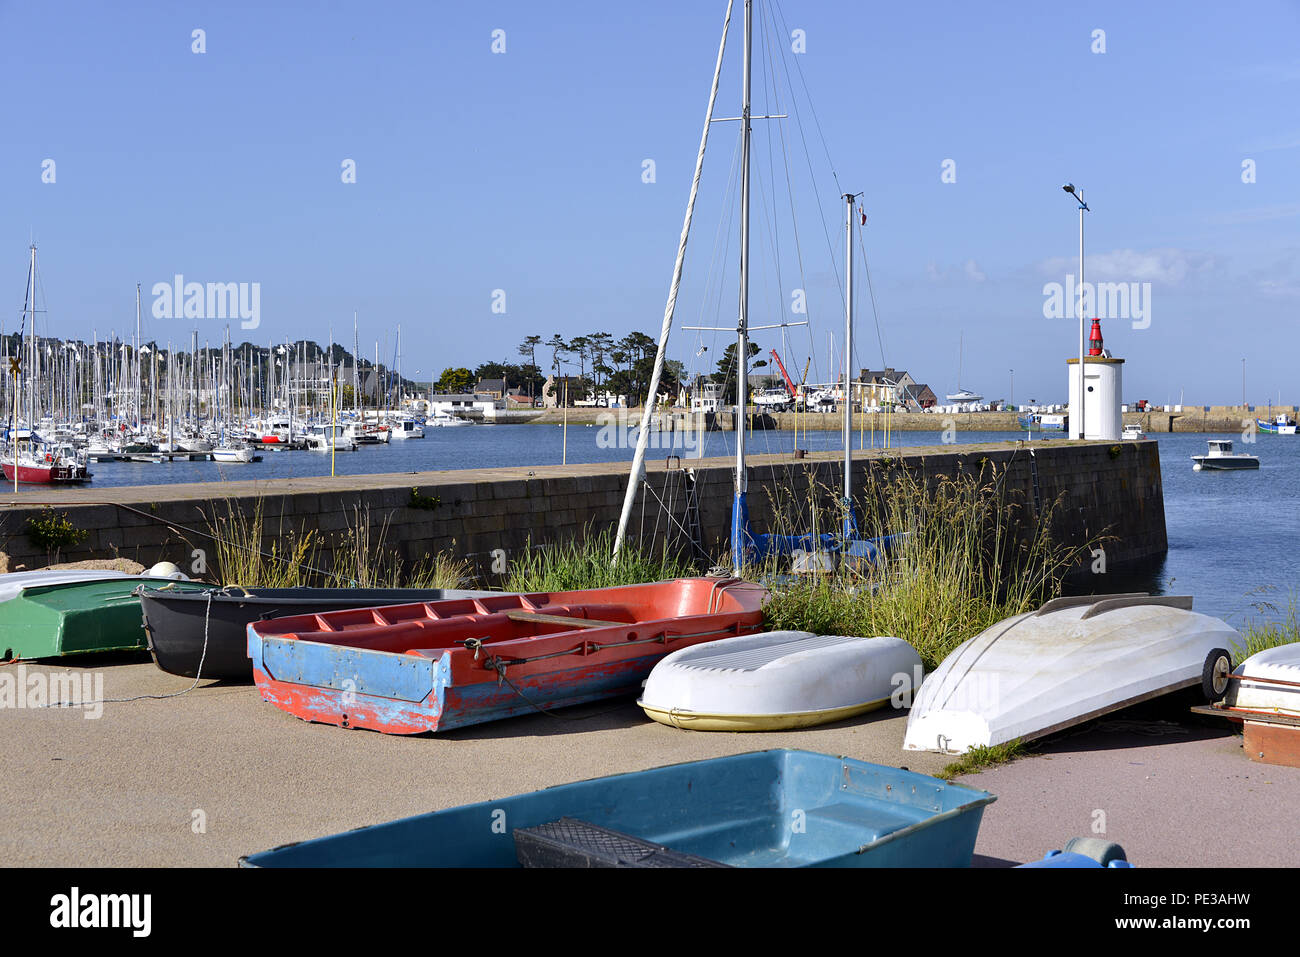 Les petits bateaux dans le port de Perros-Guirec, une commune française du département des Côtes-d'Armor en Bretagne, dans le nord-ouest de la France Banque D'Images